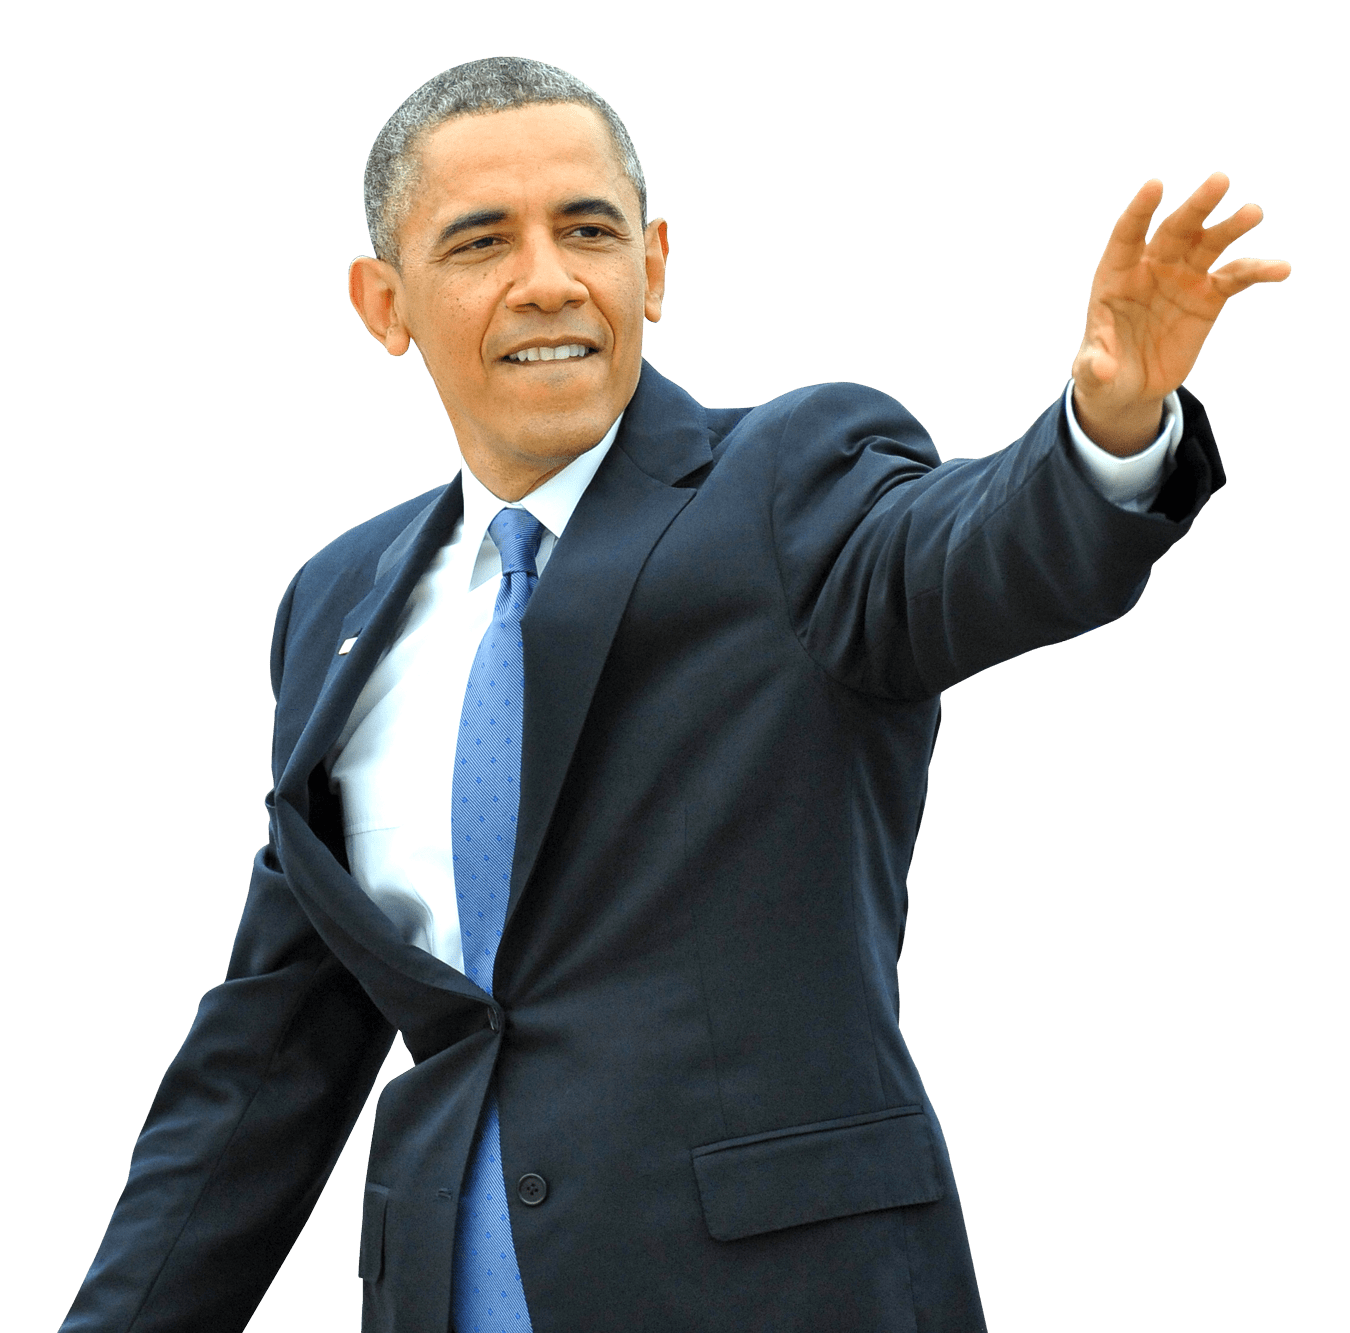 Barack Suit Obama Free Transparent Image HQ PNG Image